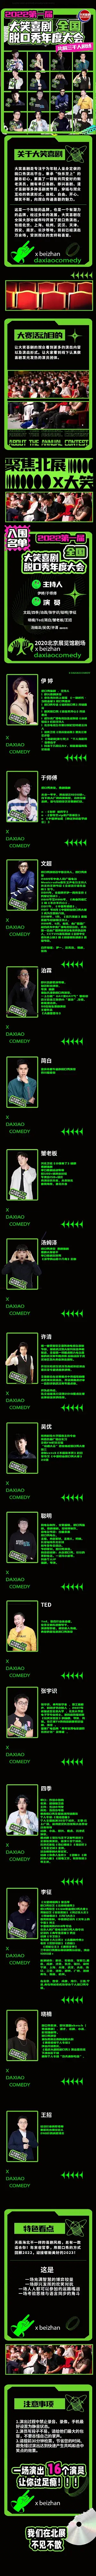 2022大笑喜剧脱口秀年度大会第一届【超有梗】爆笑来袭-北京站